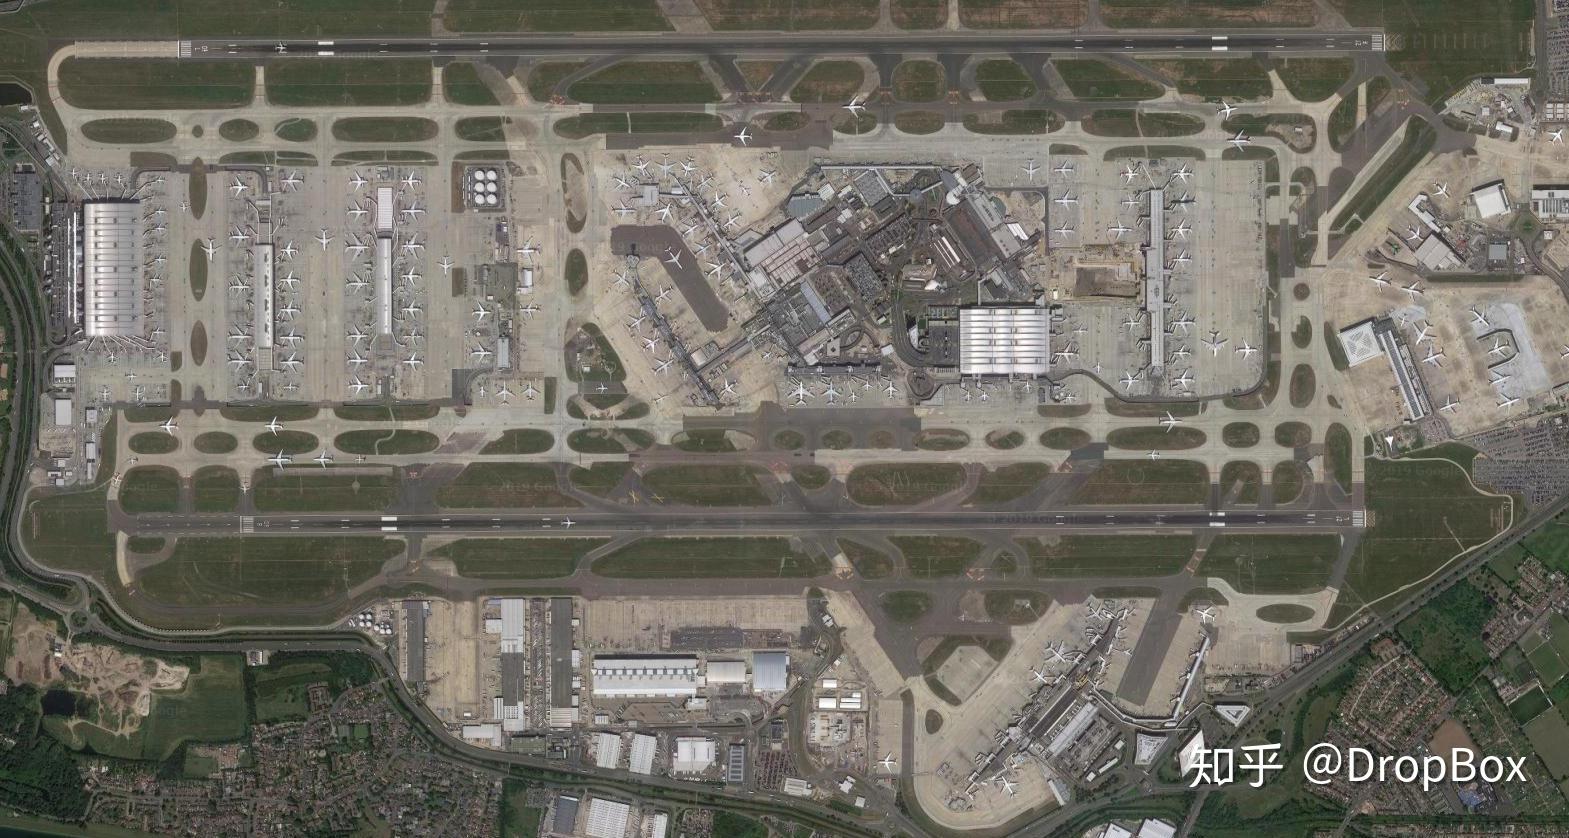 2021，还有哪些“新”机场将带来惊喜？_中国机场建设网